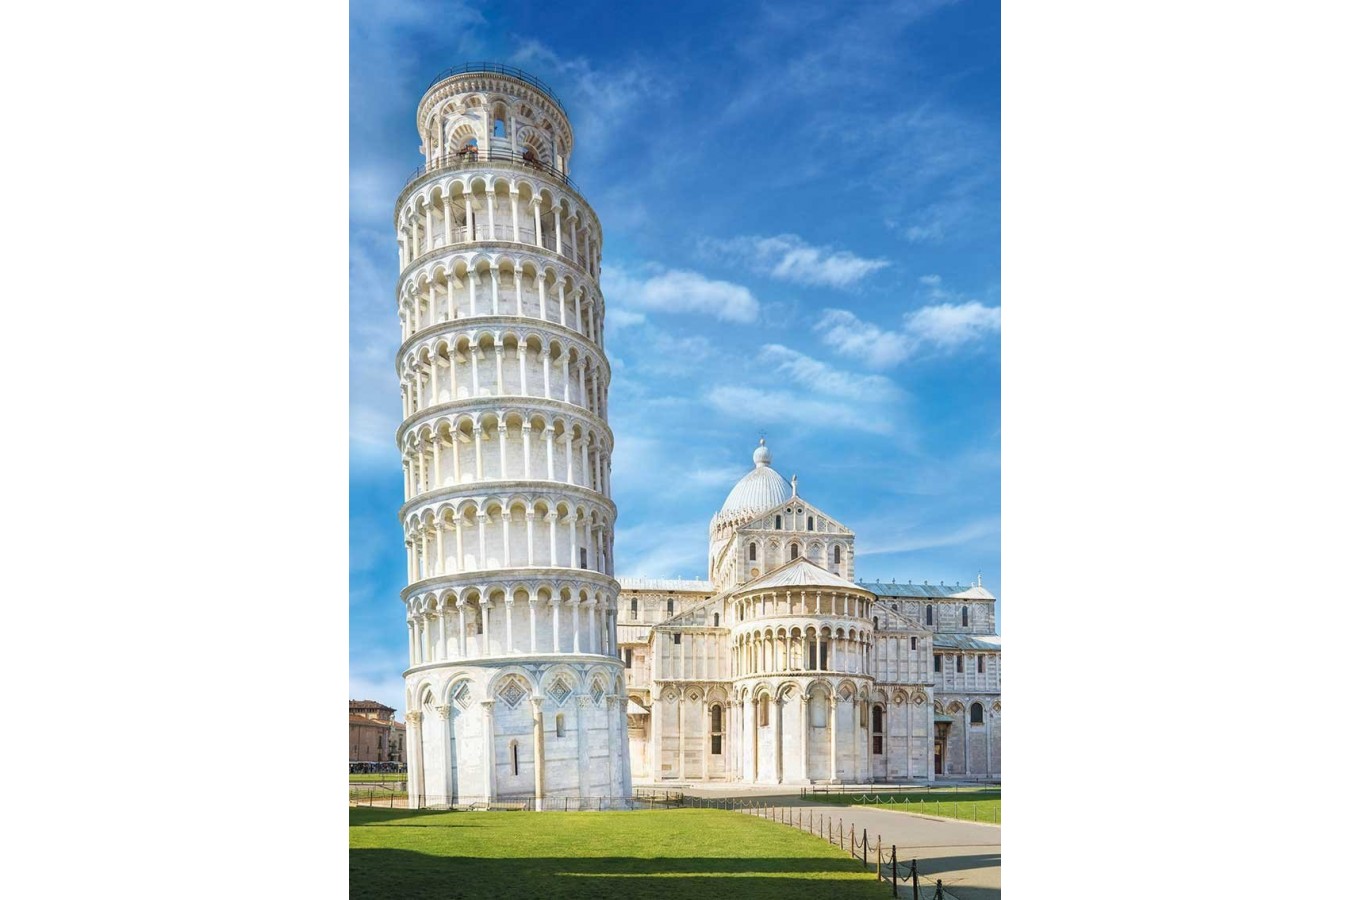 Puzzle Clementoni - Pisa, Italy, 1000 piese (62428)